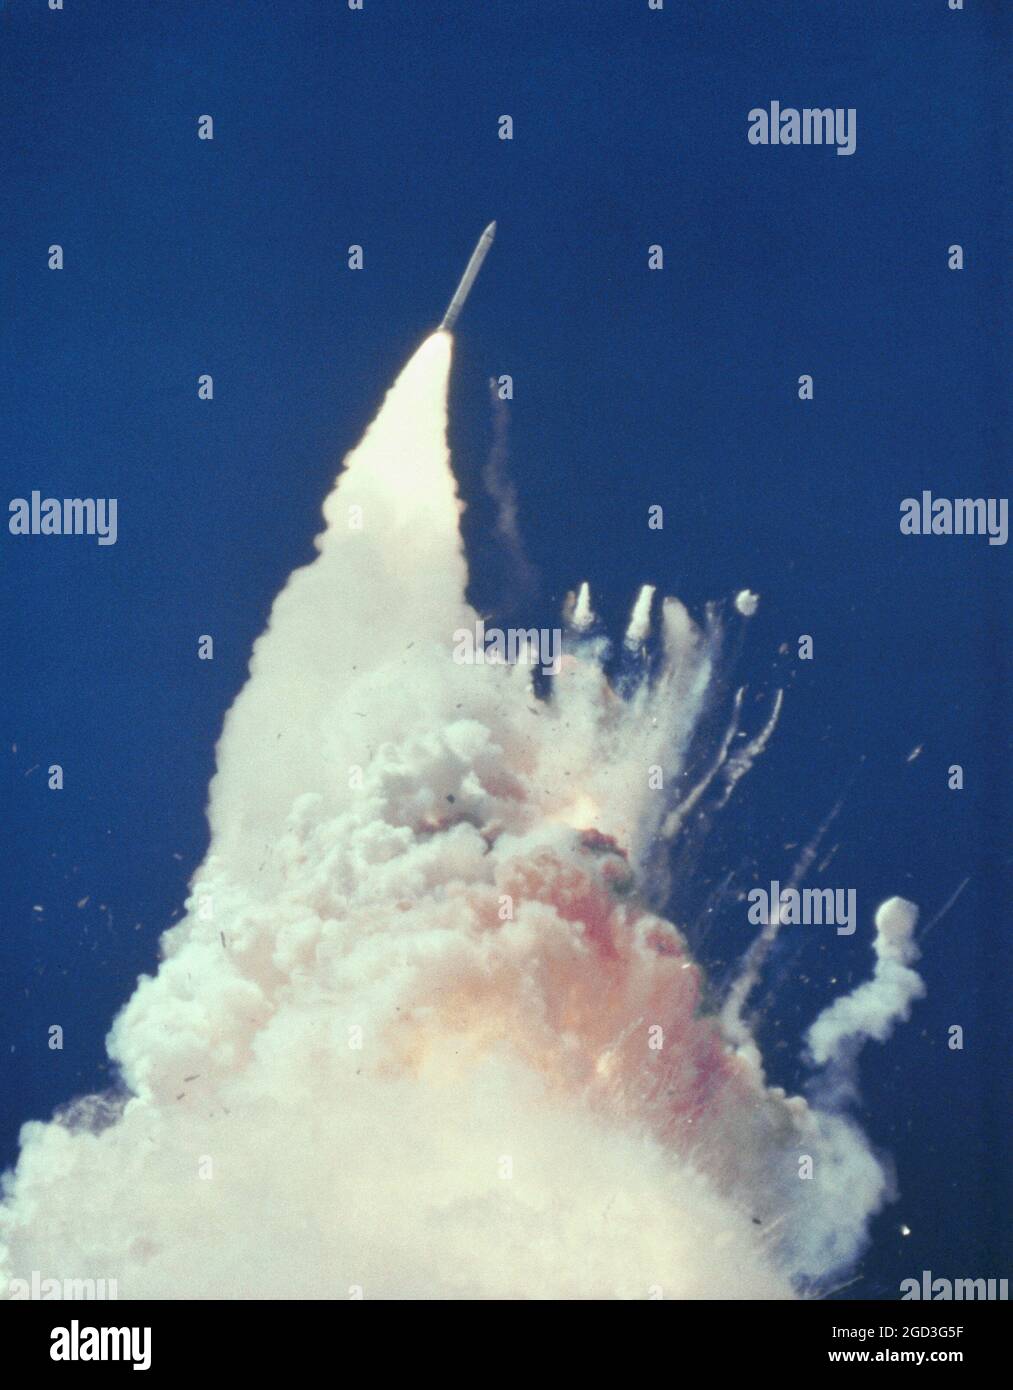 La navette spatiale Challenger explose 73 secondes après le décollage. Banque D'Images